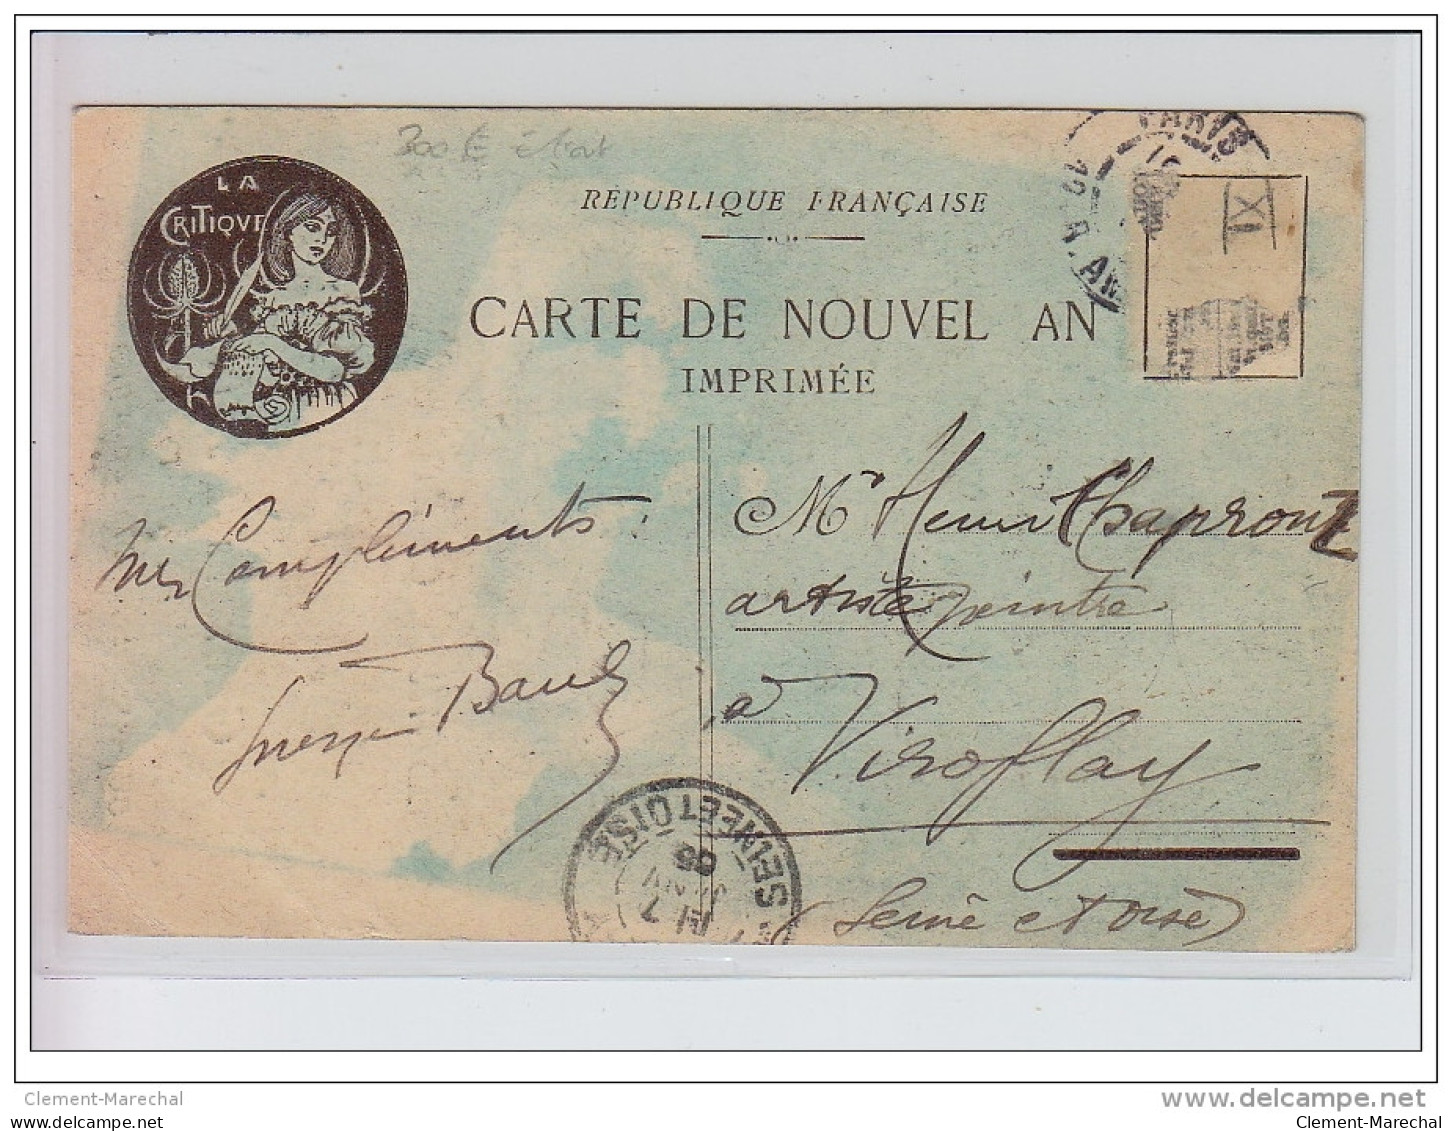 CHERET Jules : Carte Postale Illustrée Pour Les Voeux De 1905 De Georges BANS Envoyée A  L'illustrateur Henri CHAPRONT - - Chéret